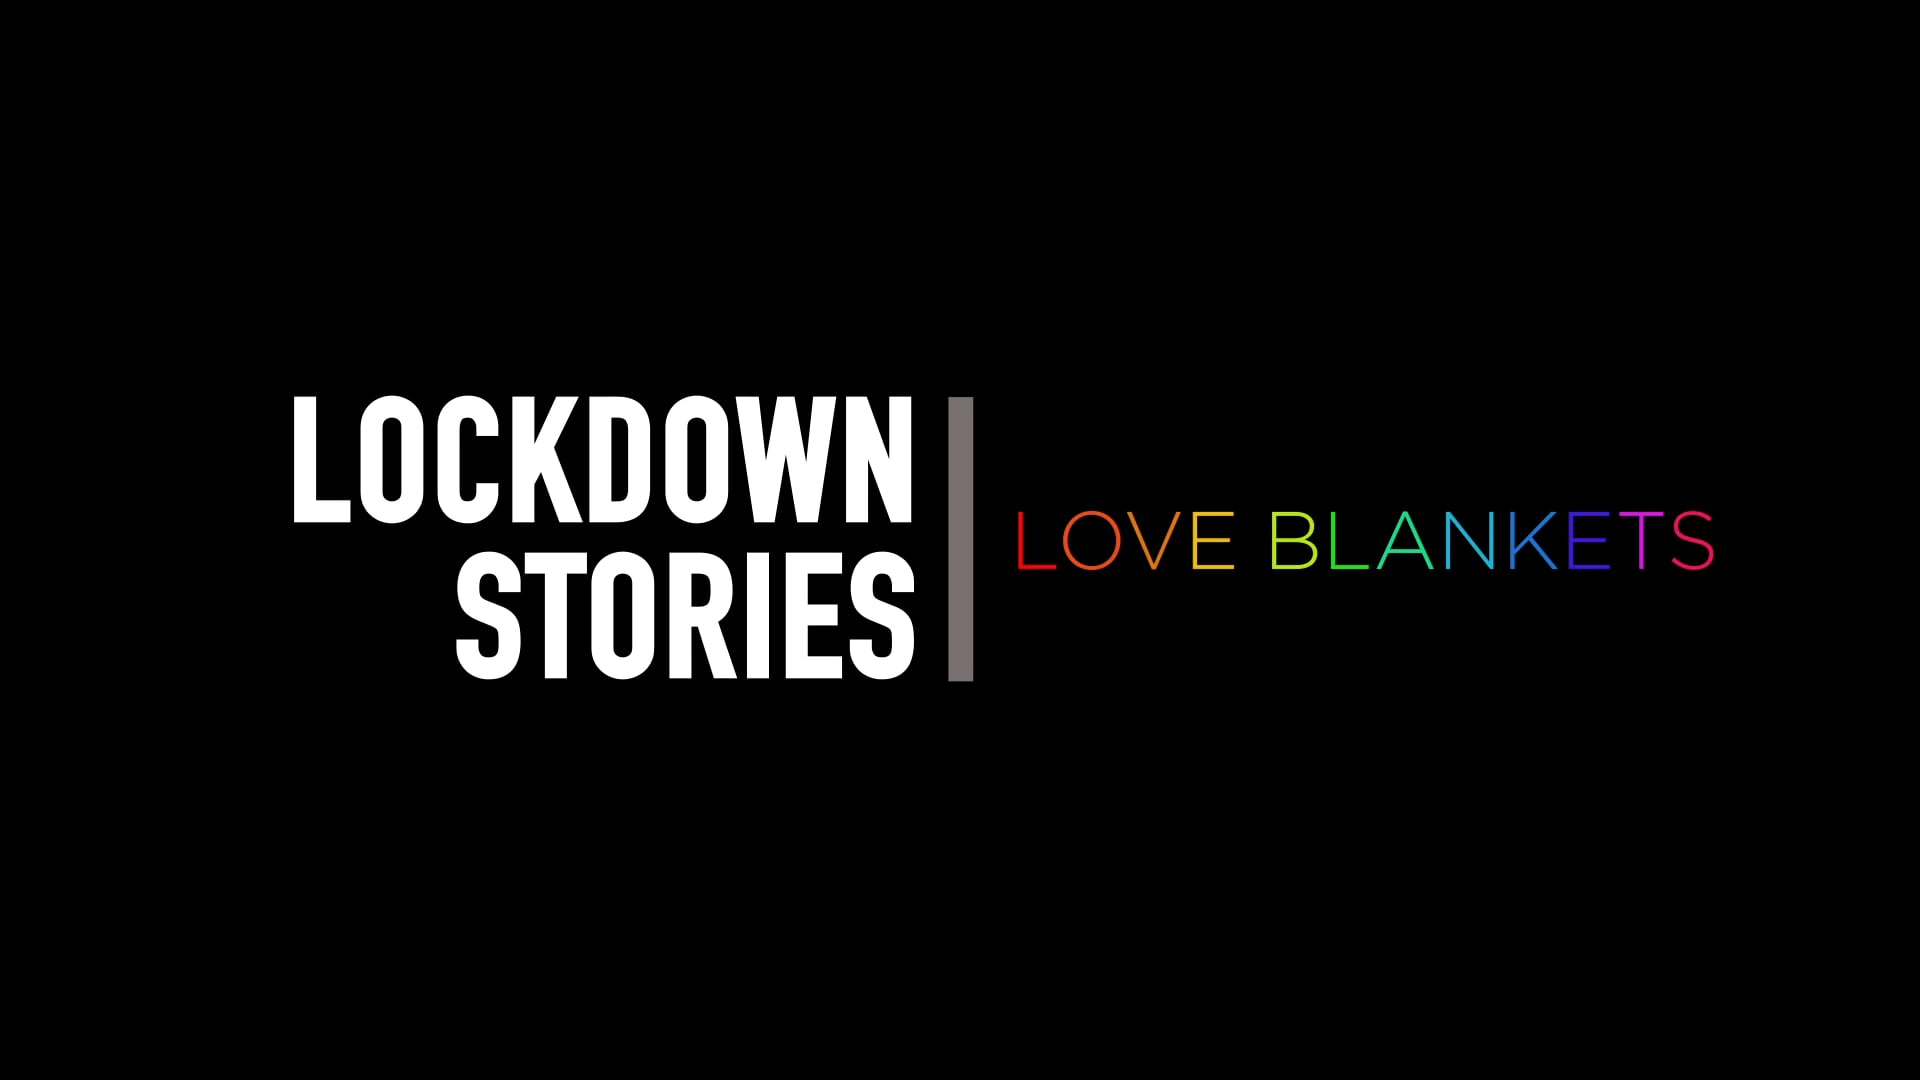 Lockdown Stories. Love Blanket.